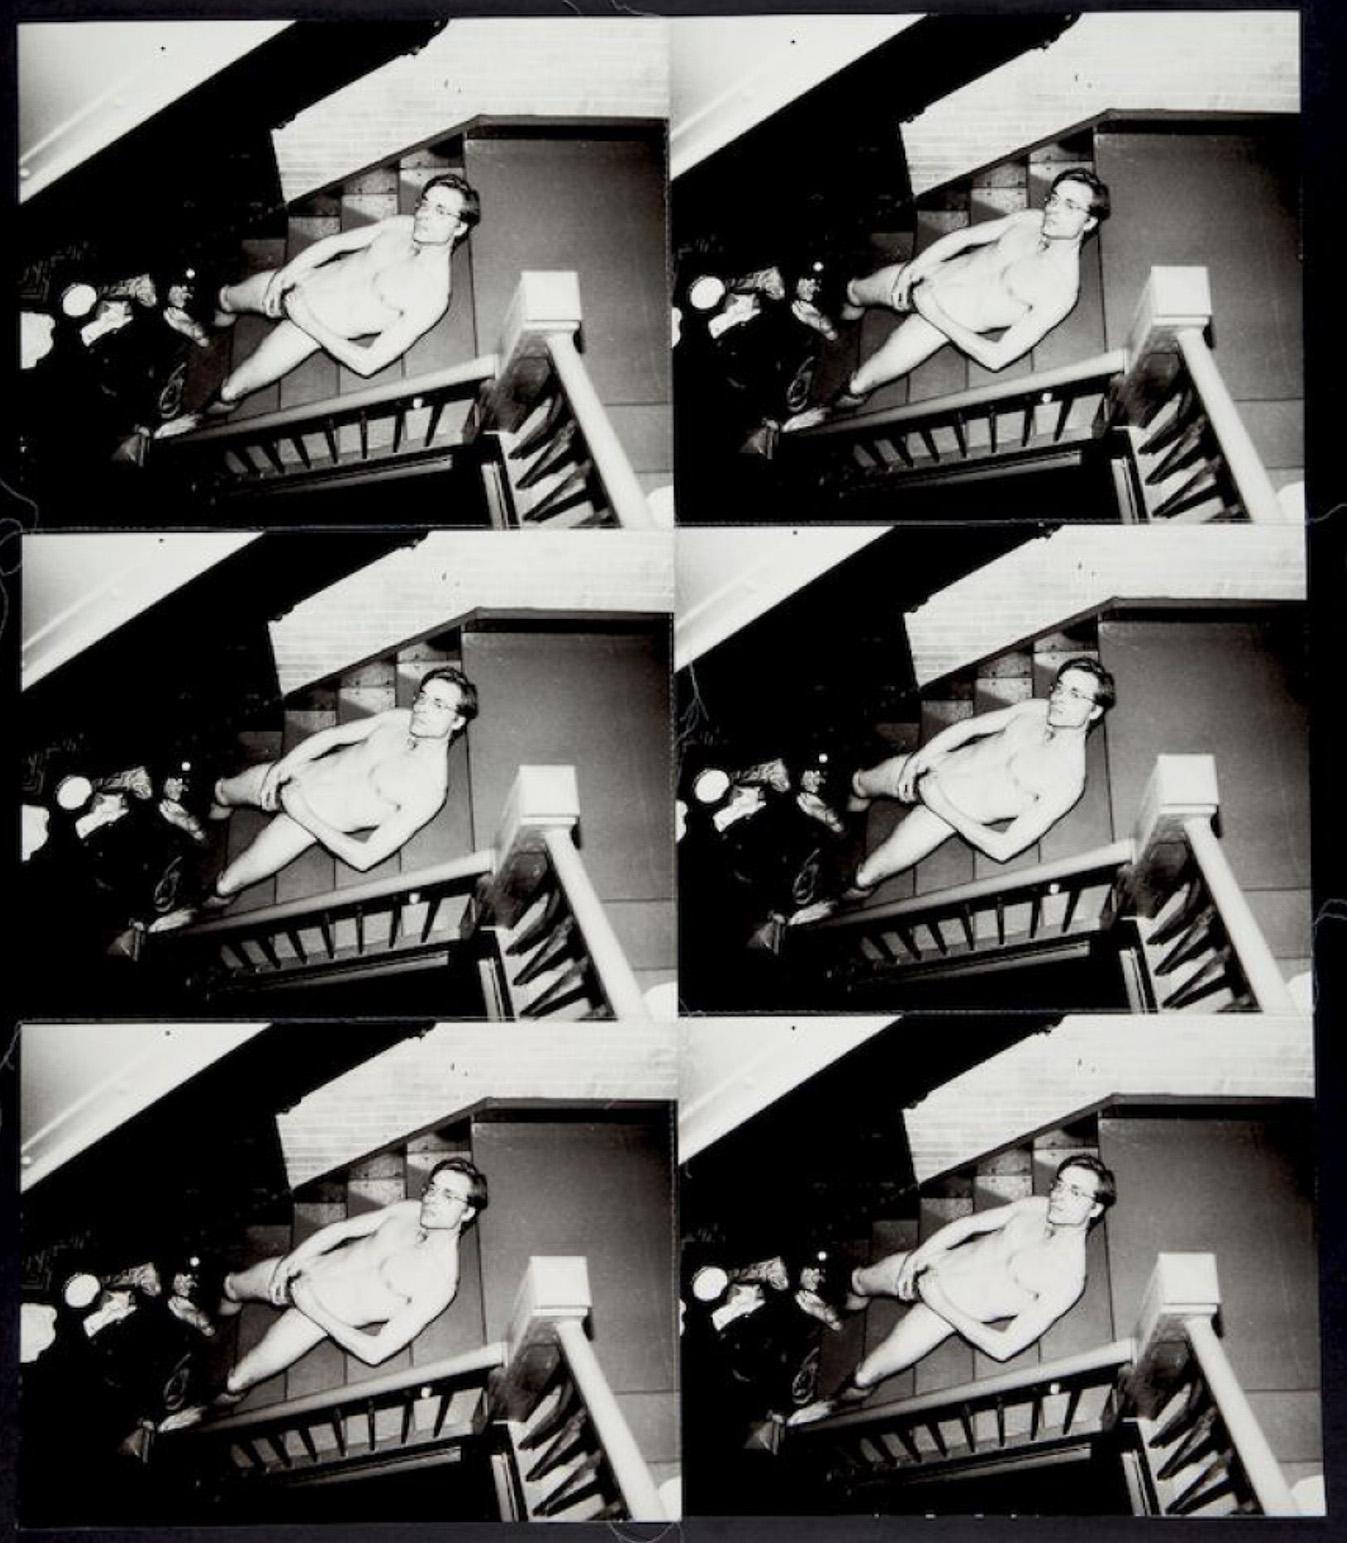 "Entre 1982 et 1987, Andy Warhol a réalisé plusieurs centaines d'œuvres comprenant chacune plusieurs photographies identiques cousues ensemble avec du fil. Sur les bords de l'œuvre, le fil excédentaire est laissé en suspens, ce qui, avec le